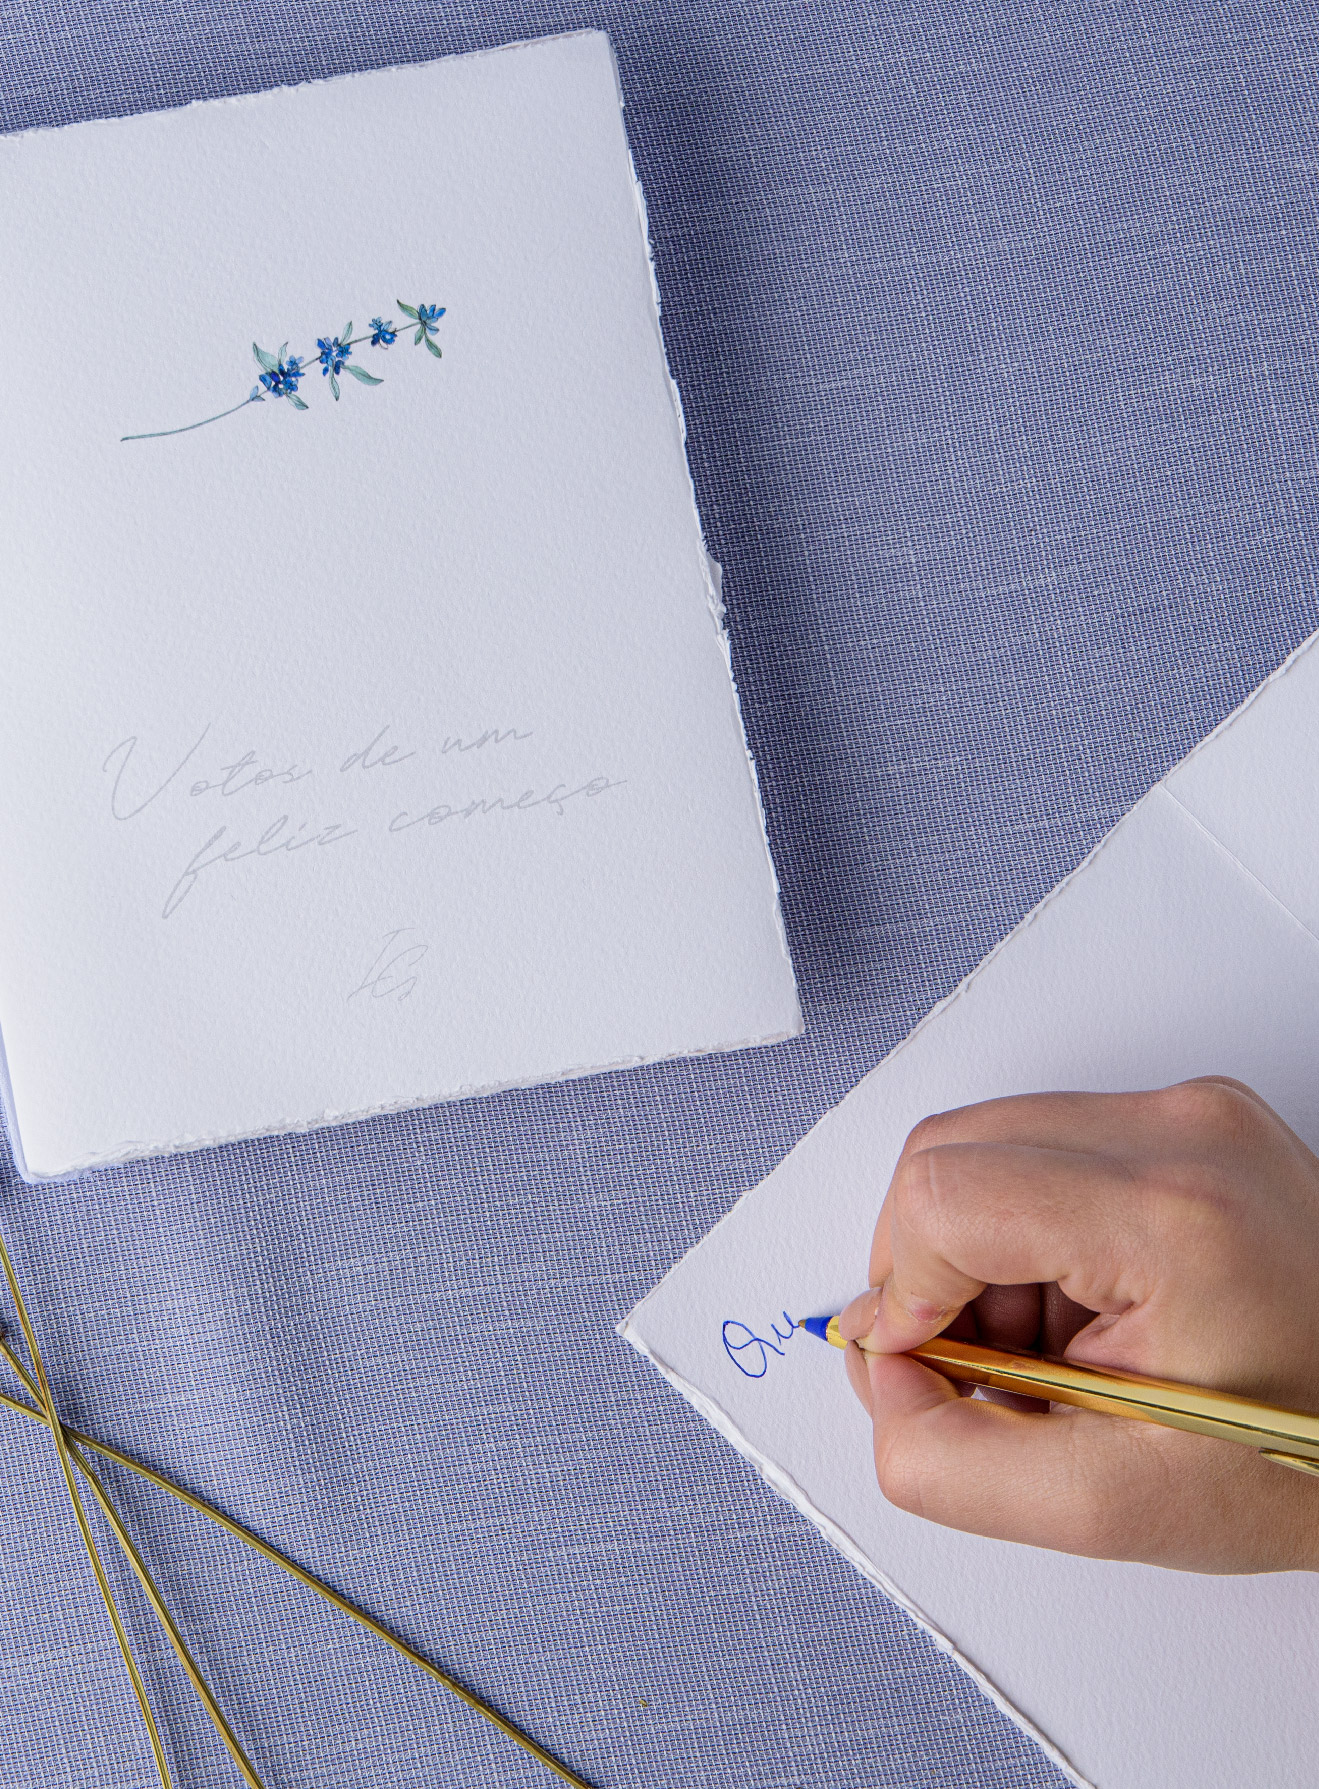 Livro de assinaturas em papel com efeito rasgado e com detalhes florais azul